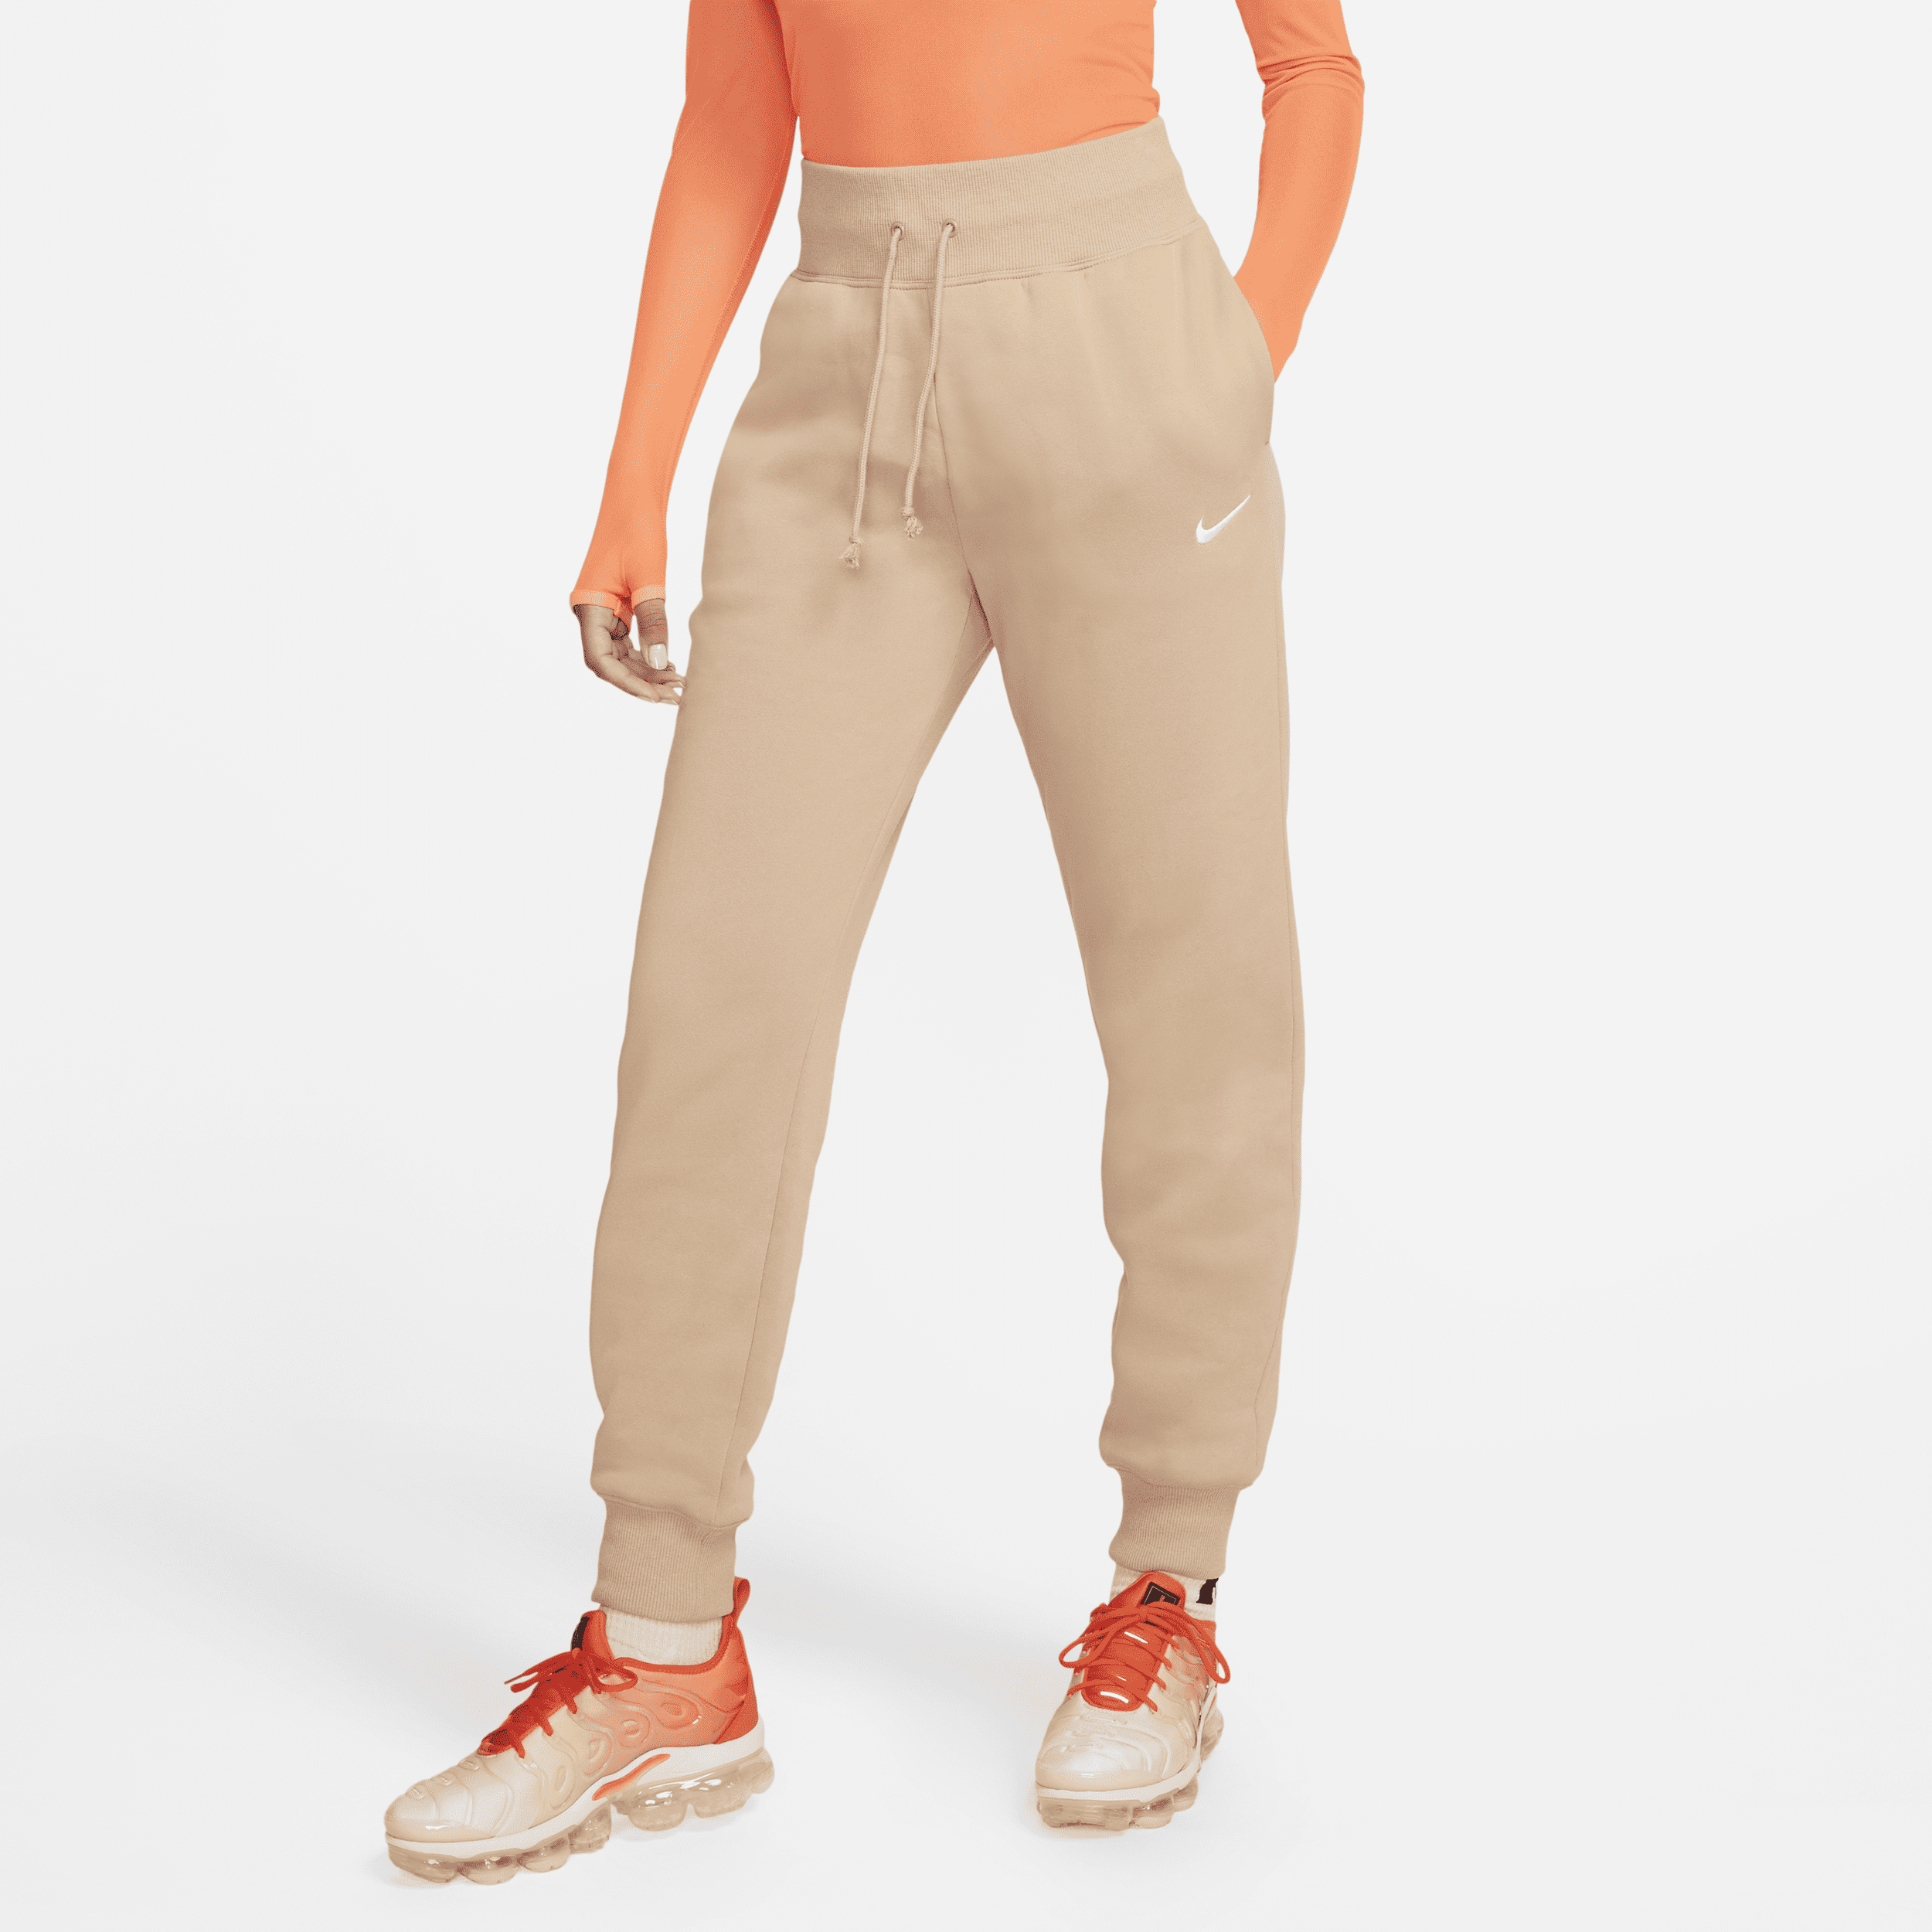 Nike Sportswear Phoenix Jogger de talle alto - Mujer - Marrón